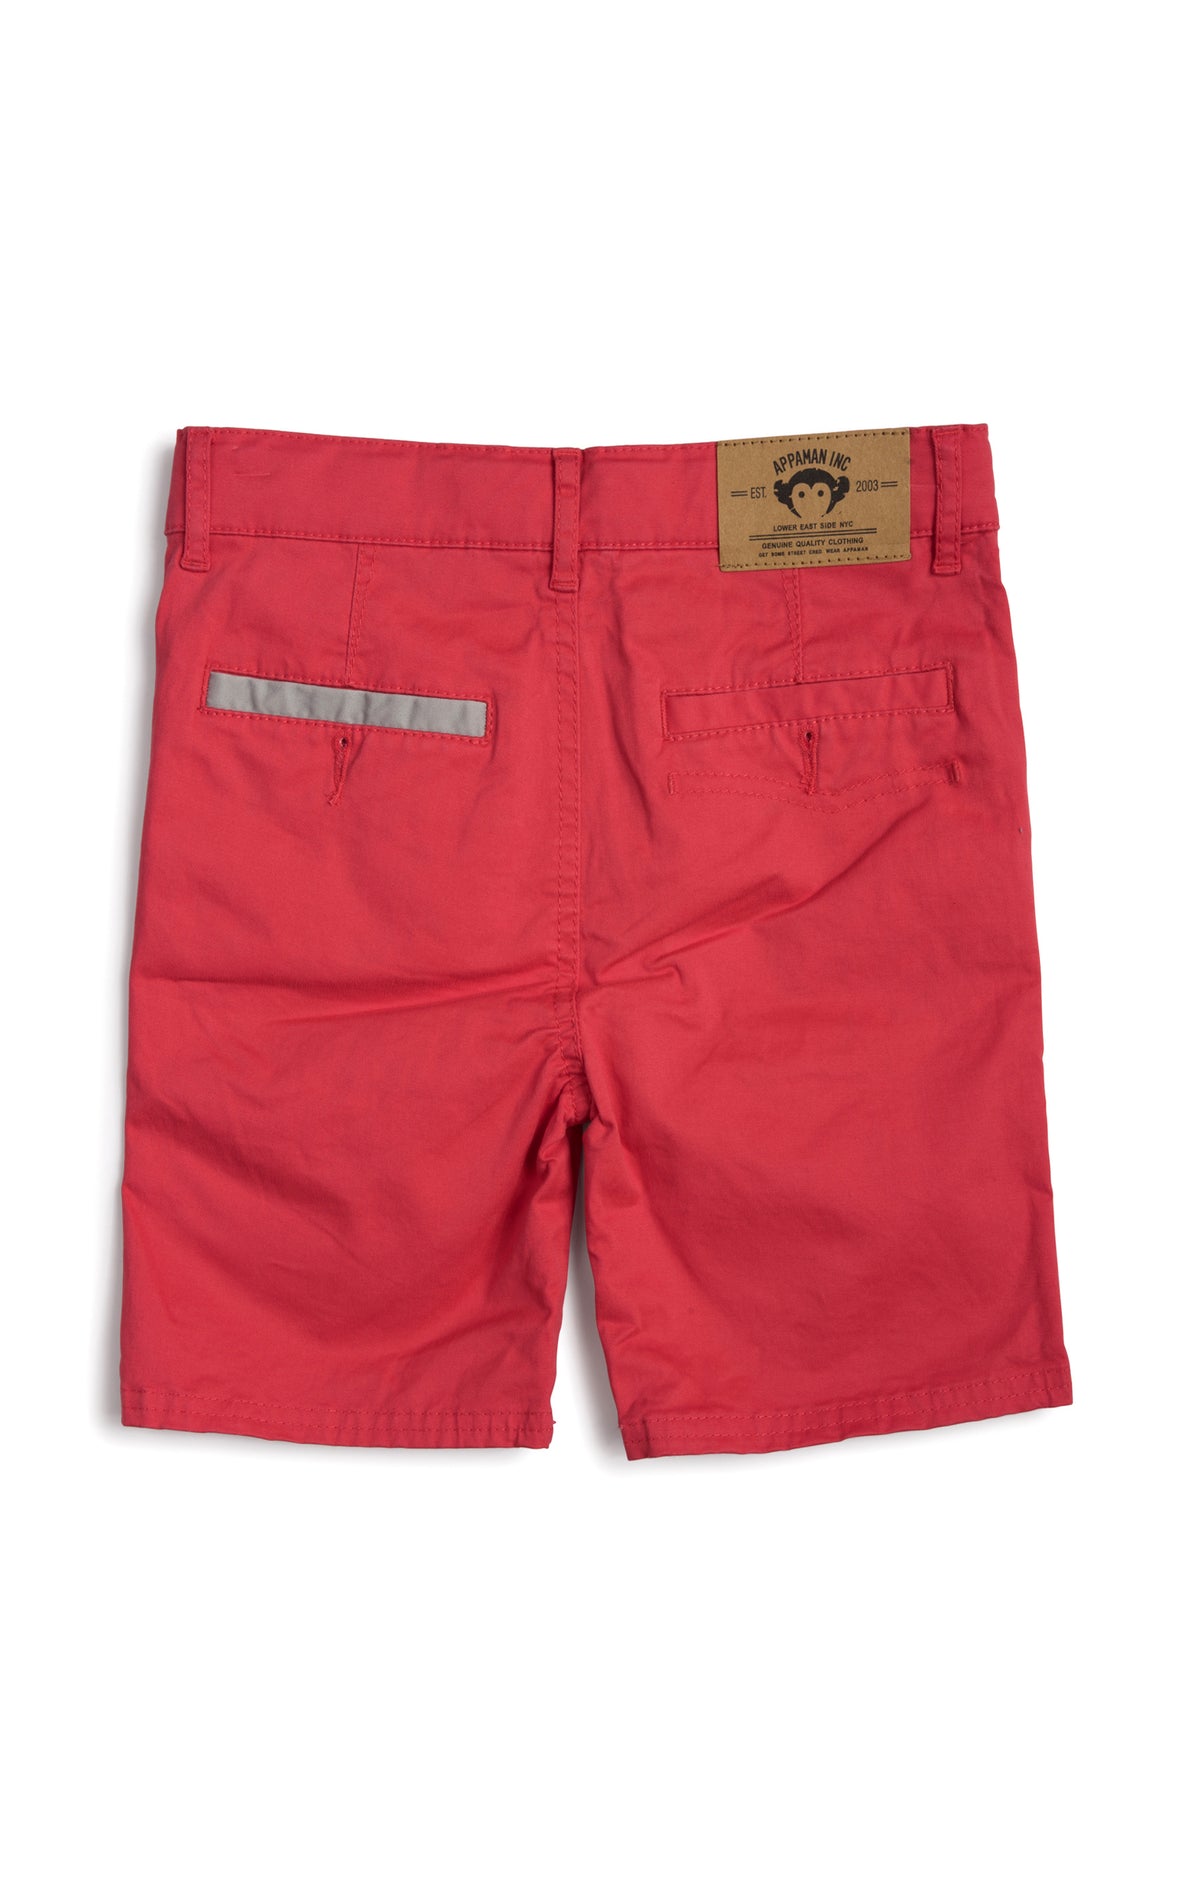 Boys Harbor Shorts